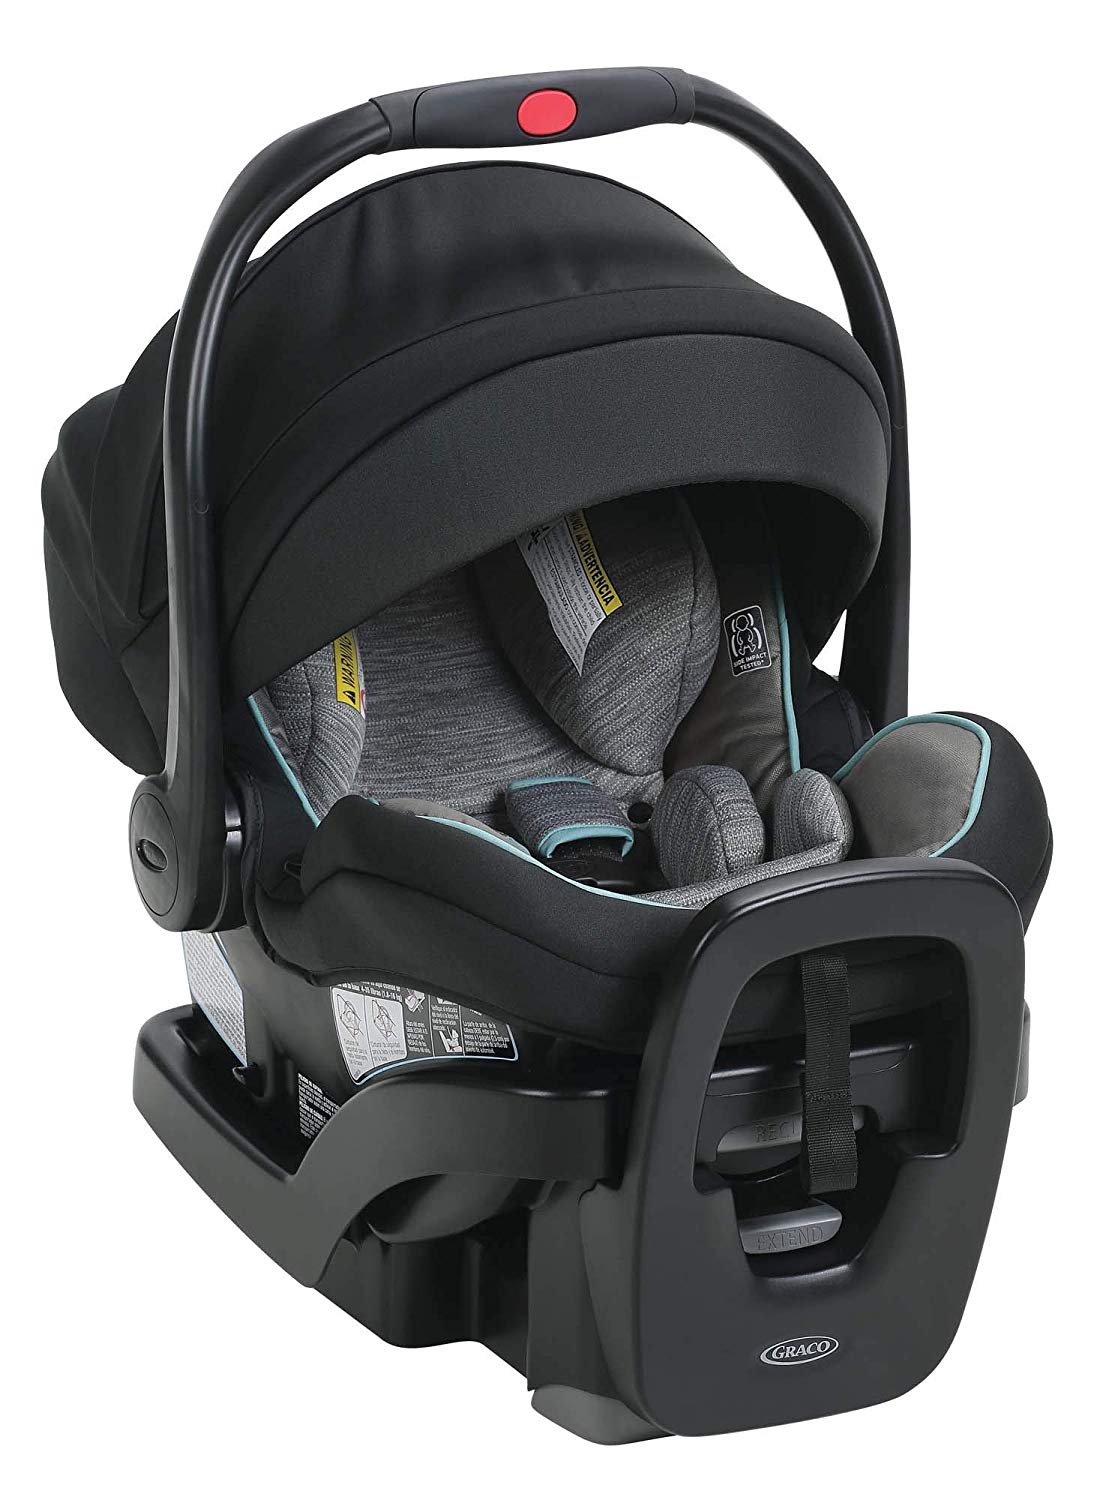 graco snugride snuglock extend2fit 35 infant car seat